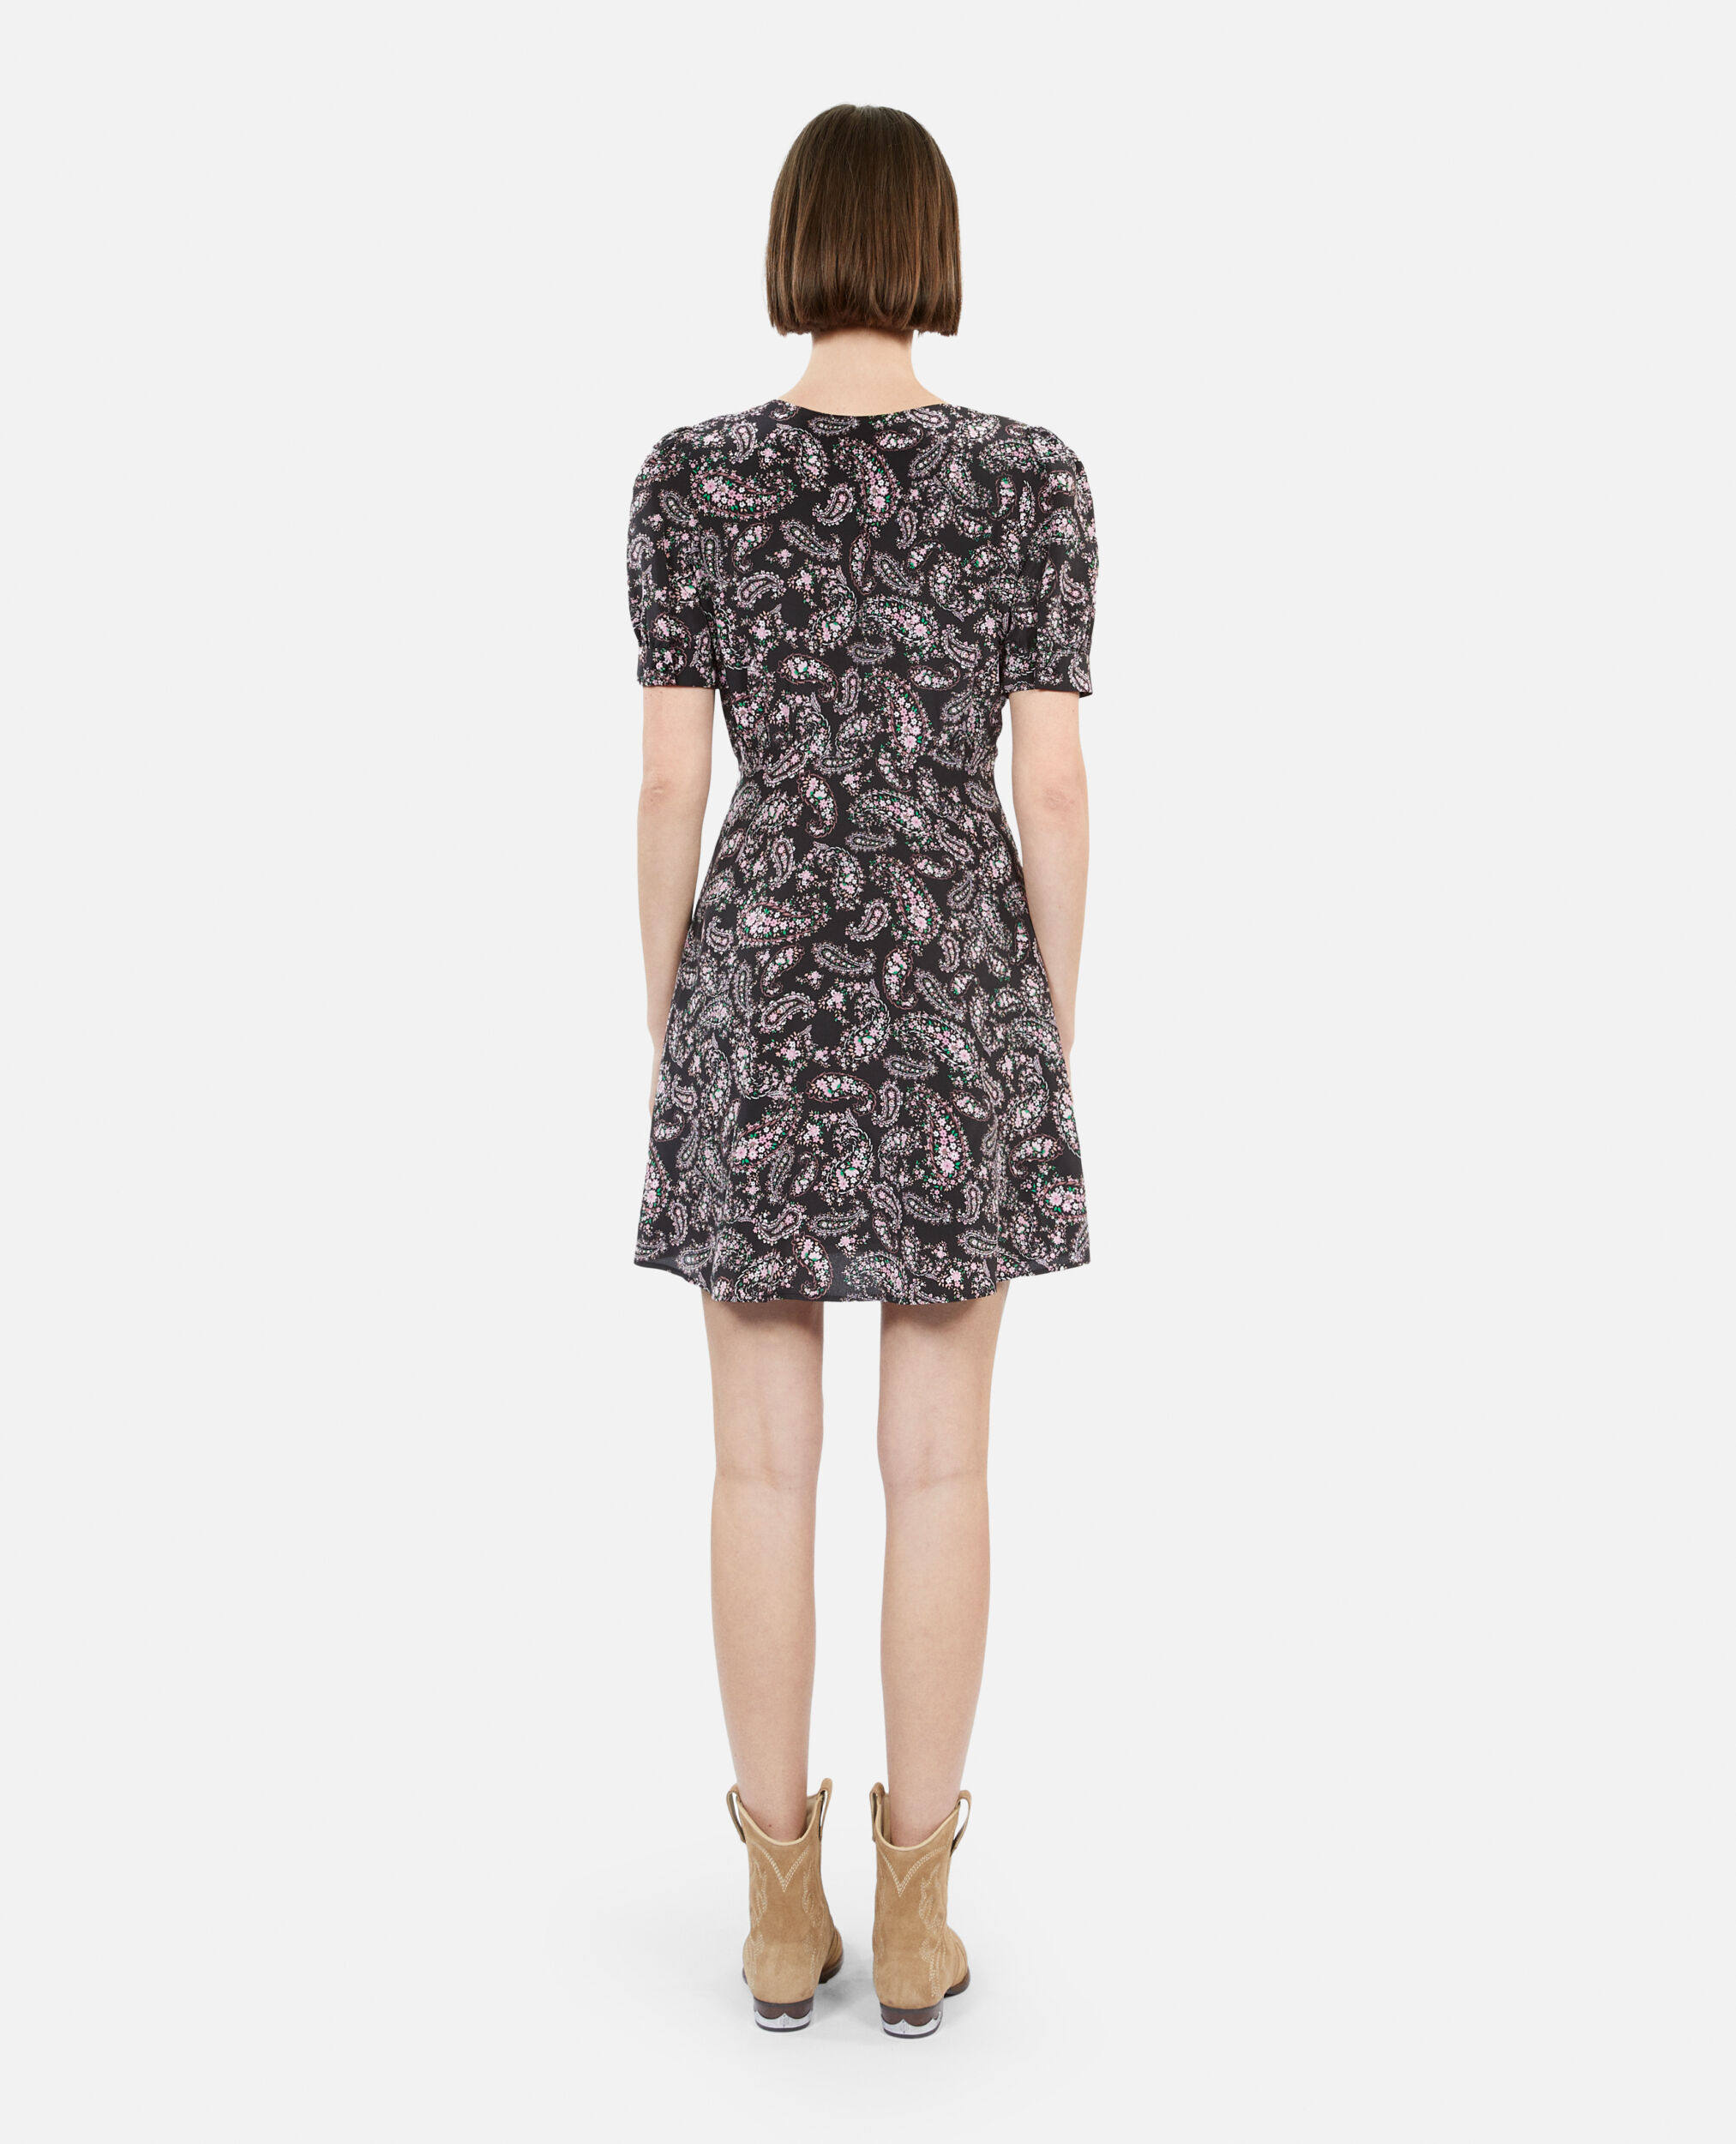 Kurzes Kleid mit Print und Knopfverschluss, BLACK / PINK, hi-res image number null